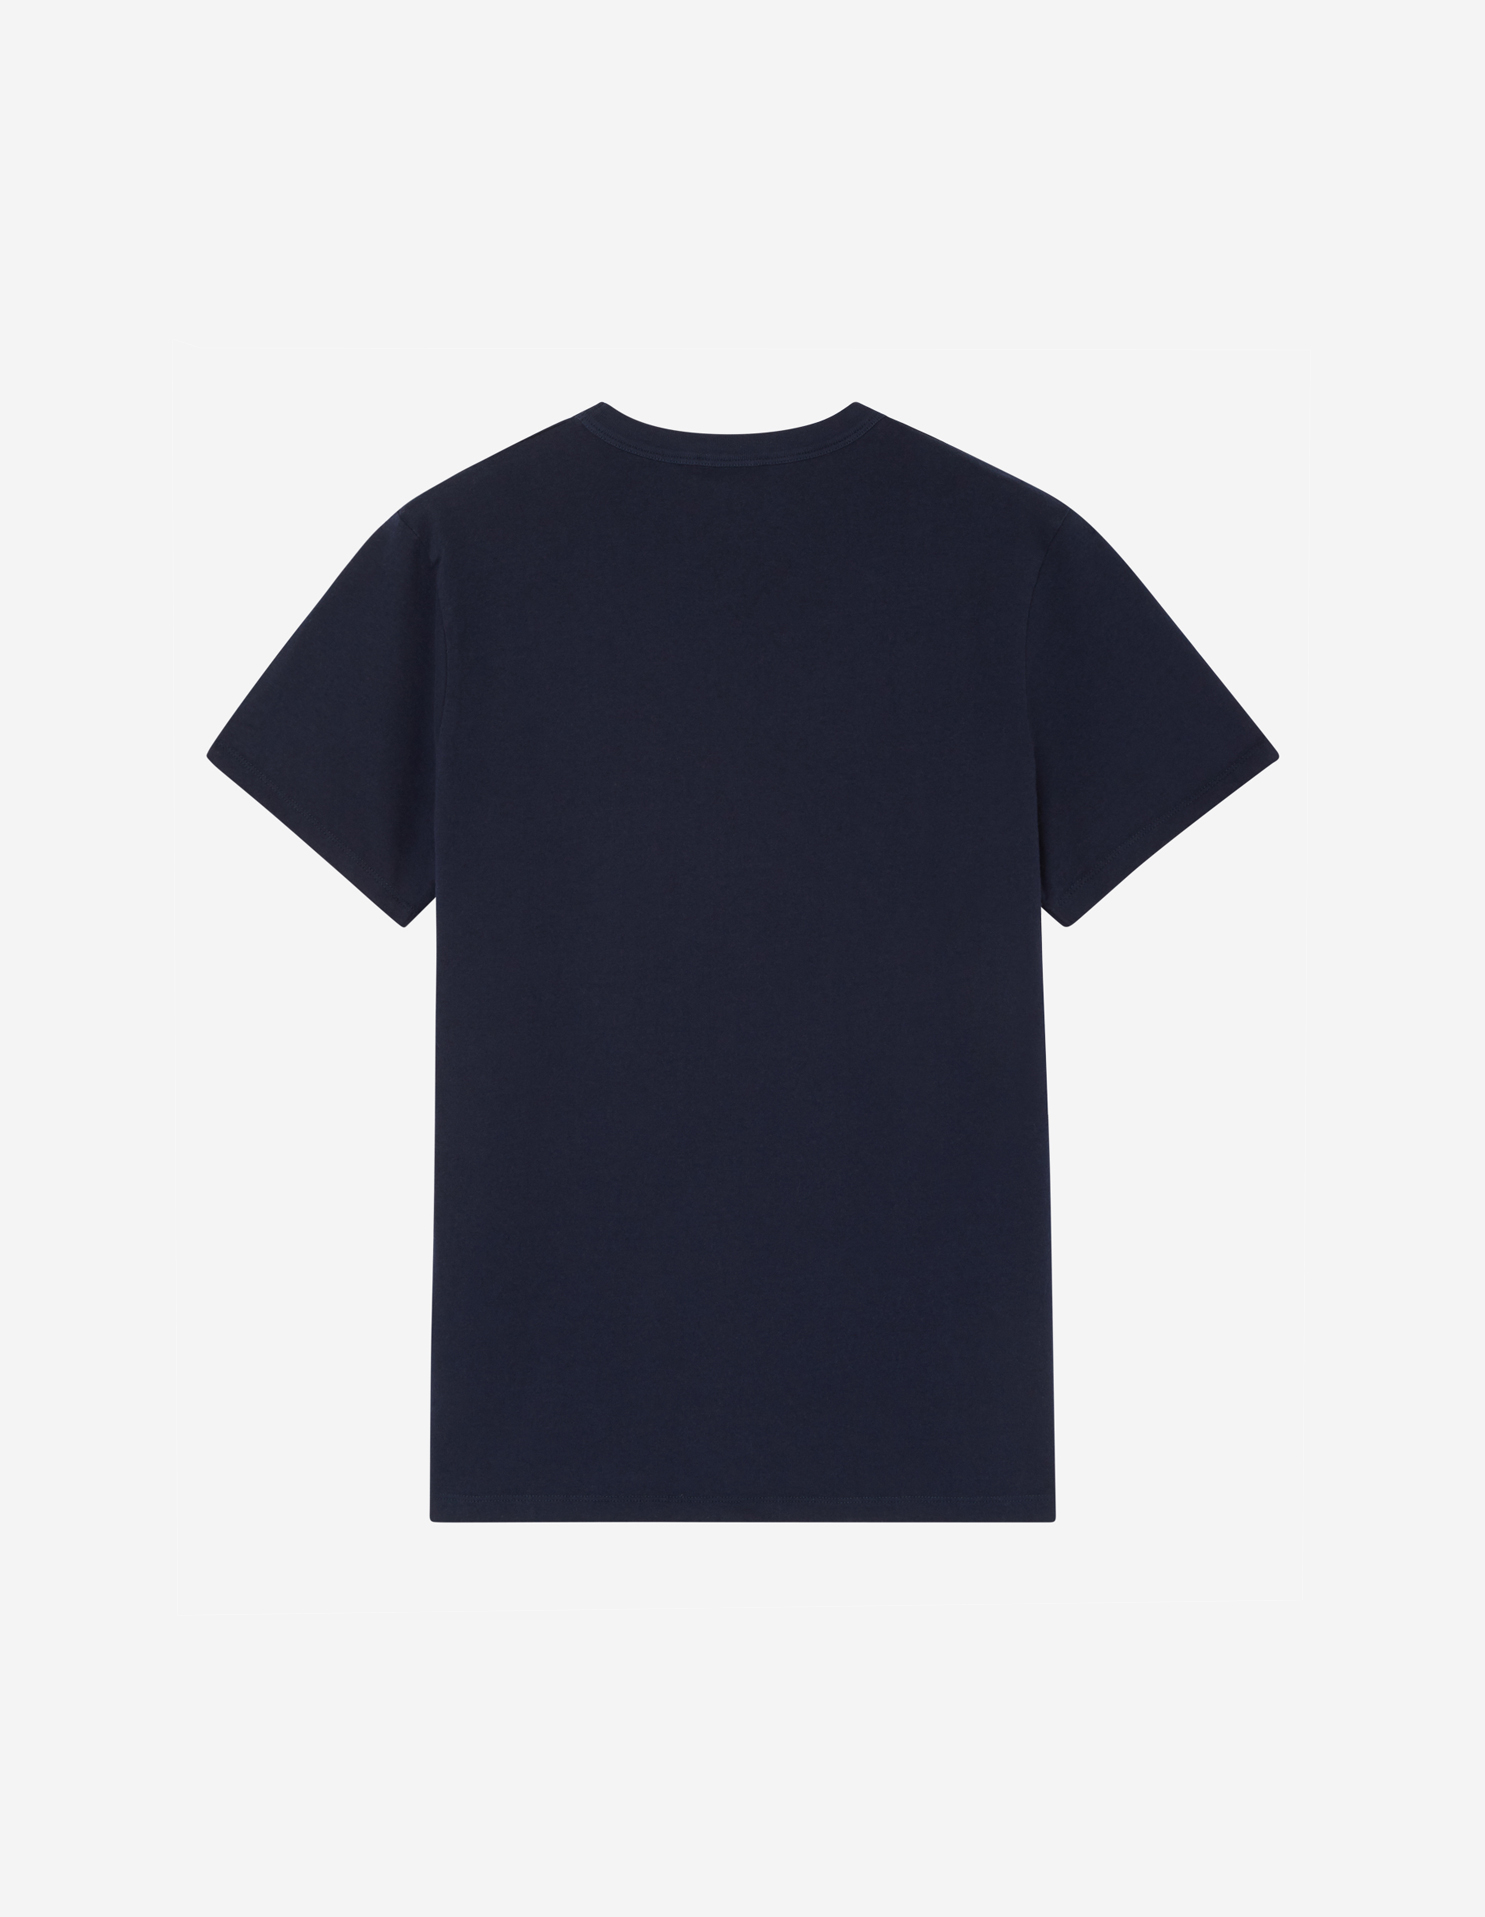 新品XL紺 メゾン キツネ グレー フォックスヘッド パッチ クラシックTシャツ正規店購入の100%本物です